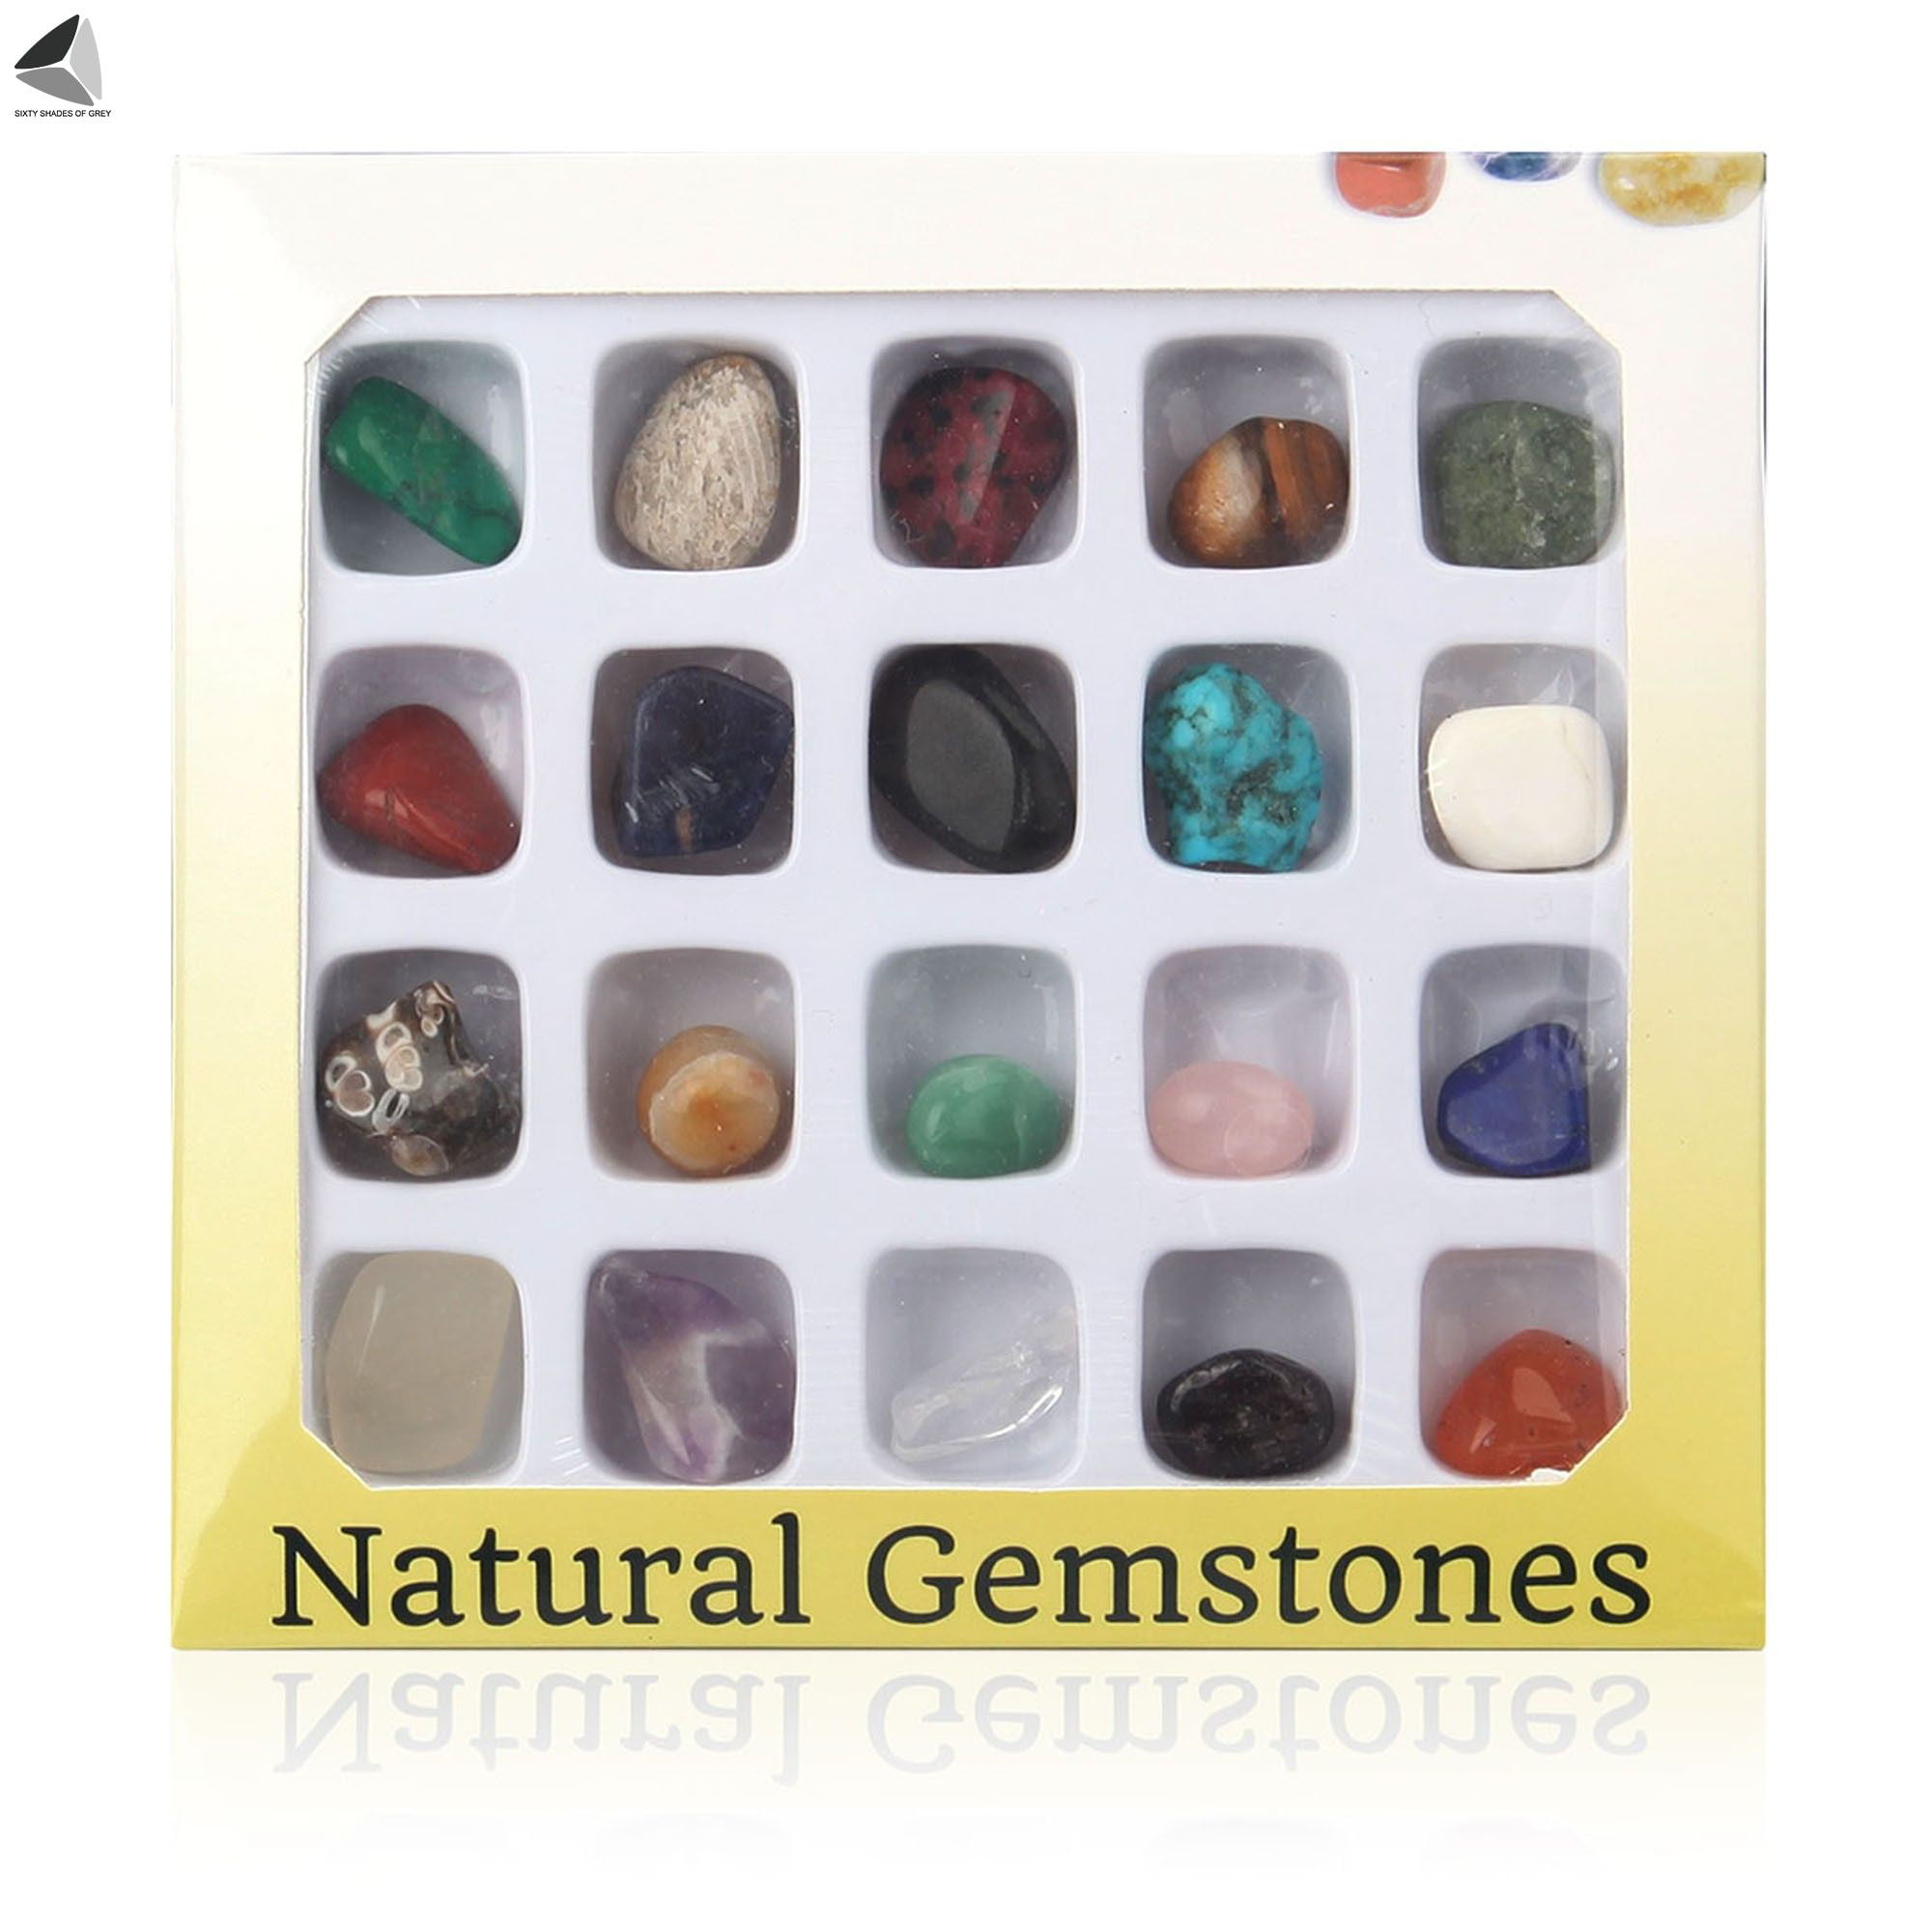 Natural Healing Gems